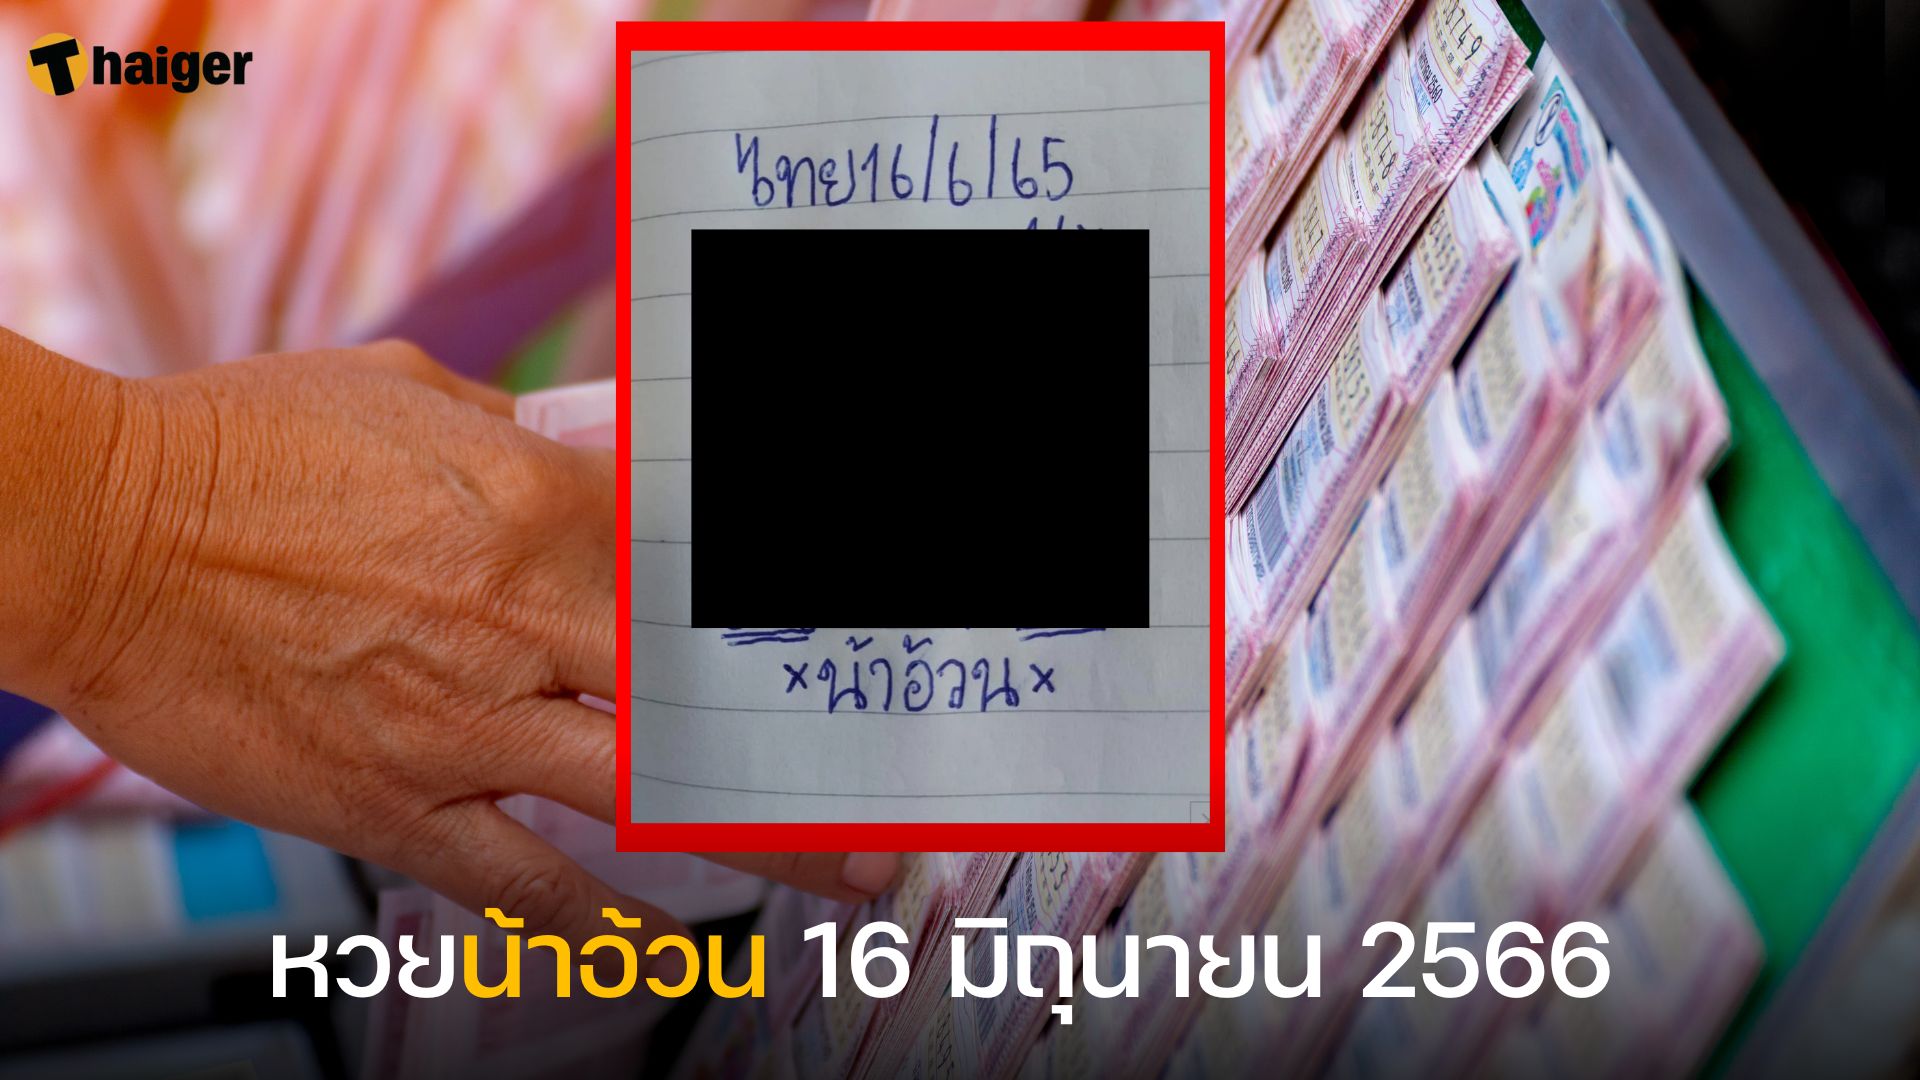 หวยน้าอ้วน 16 มิถุนายน 2566 เปิดแนวทางเลขเด็ด งวดนี้มาแน่ | Thaiger ข่าวไทย